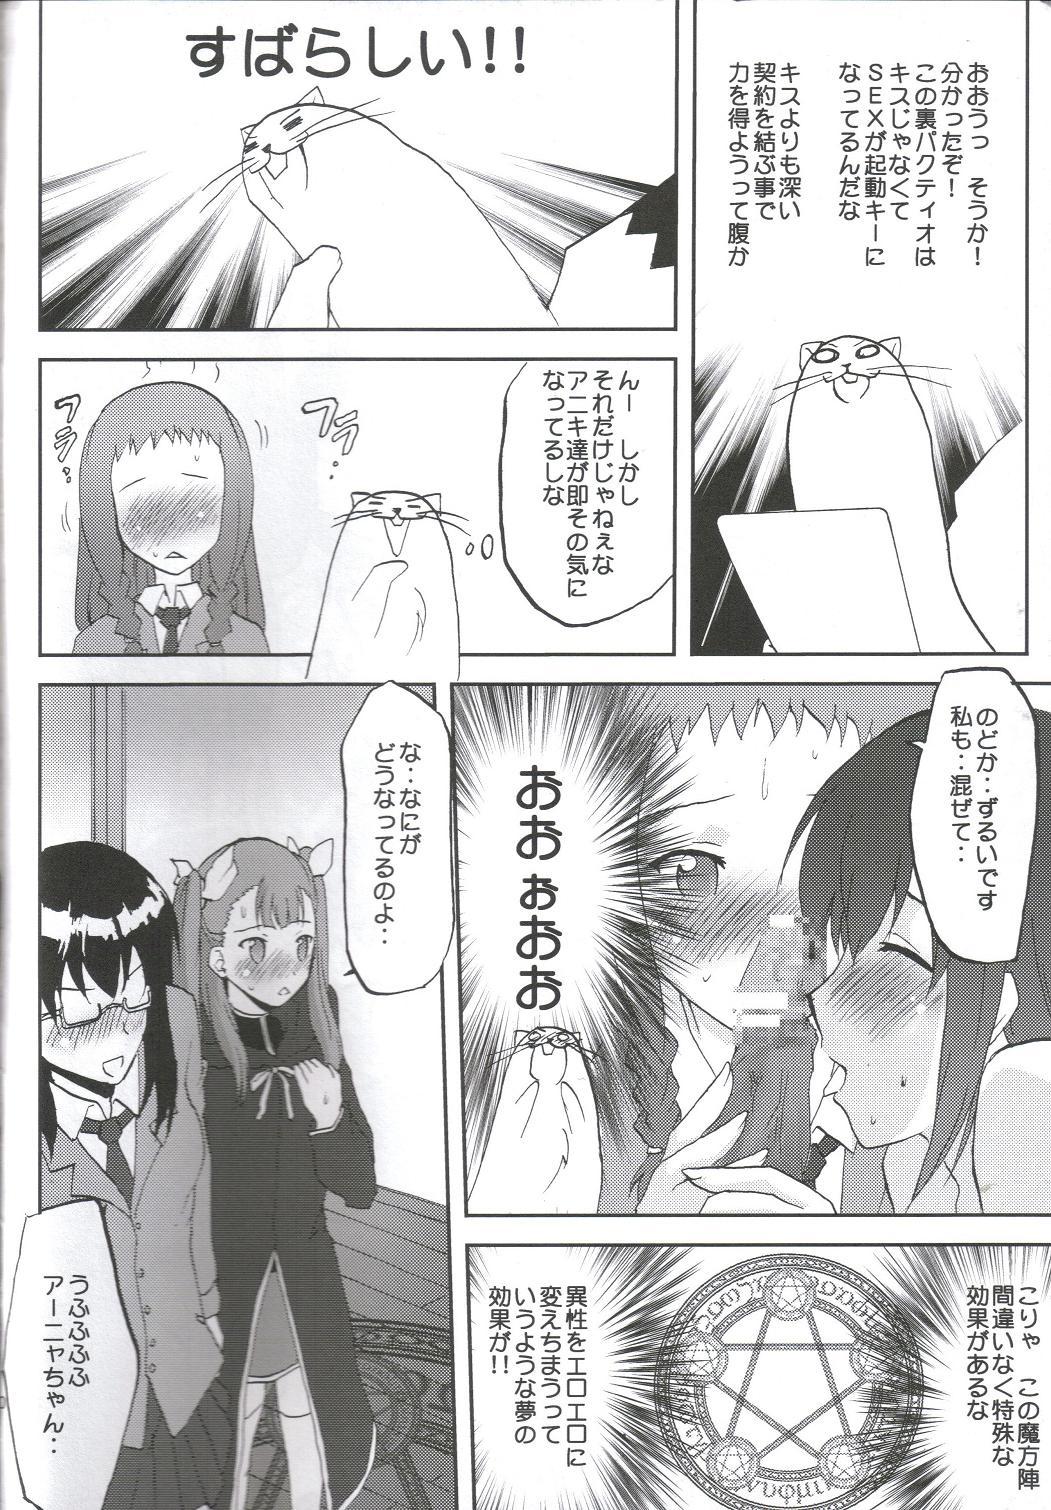 Semen Kansen Kakudai .Negi Vol.1 - Mahou sensei negima Party - Page 11